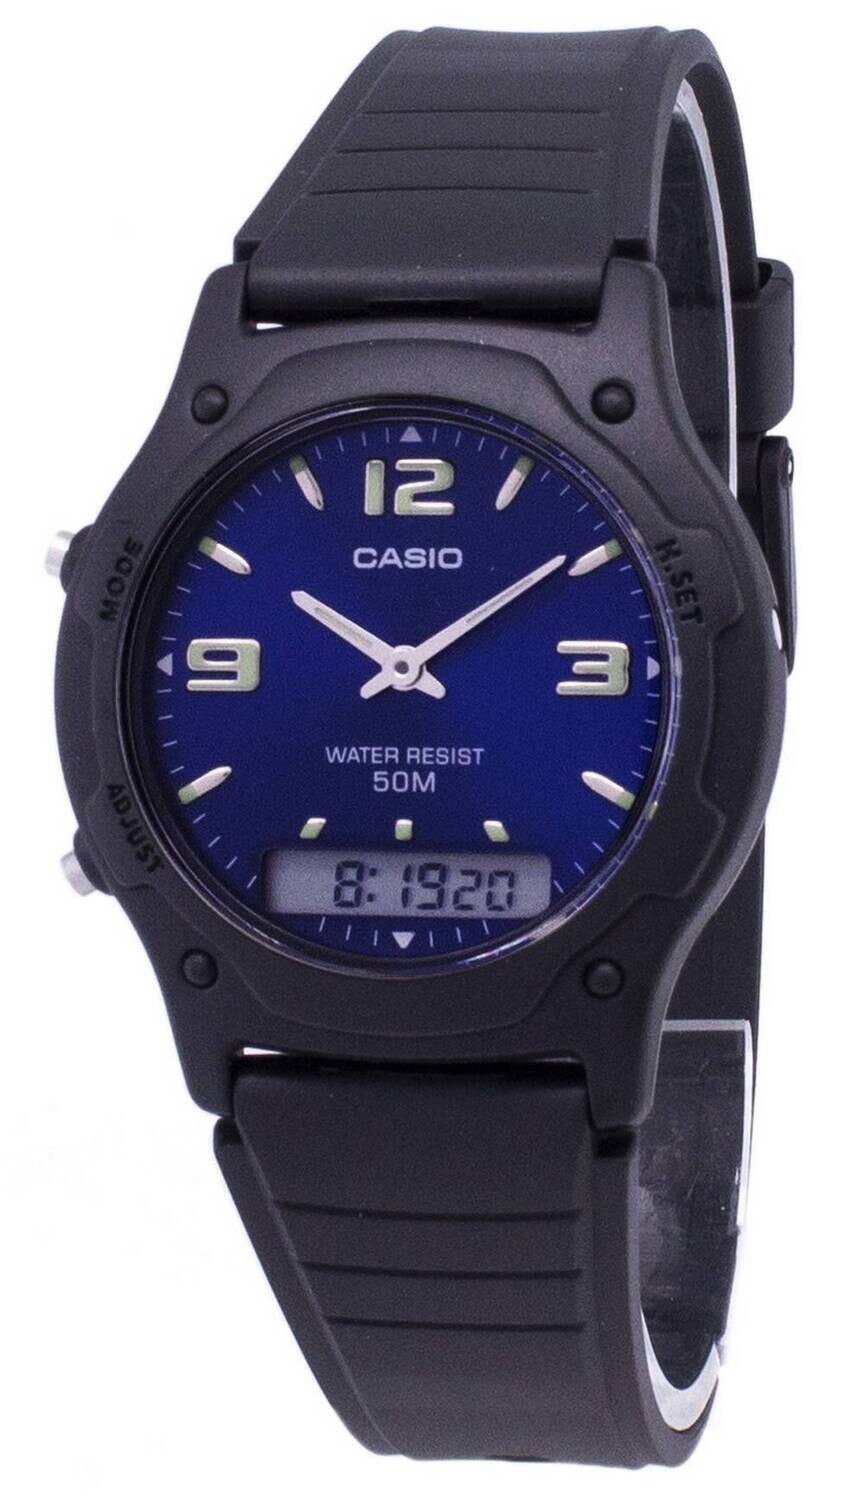 Reloj clásico hombre analógico digital Casio AW-49HE-2A dial azul correa resina 50m water resist